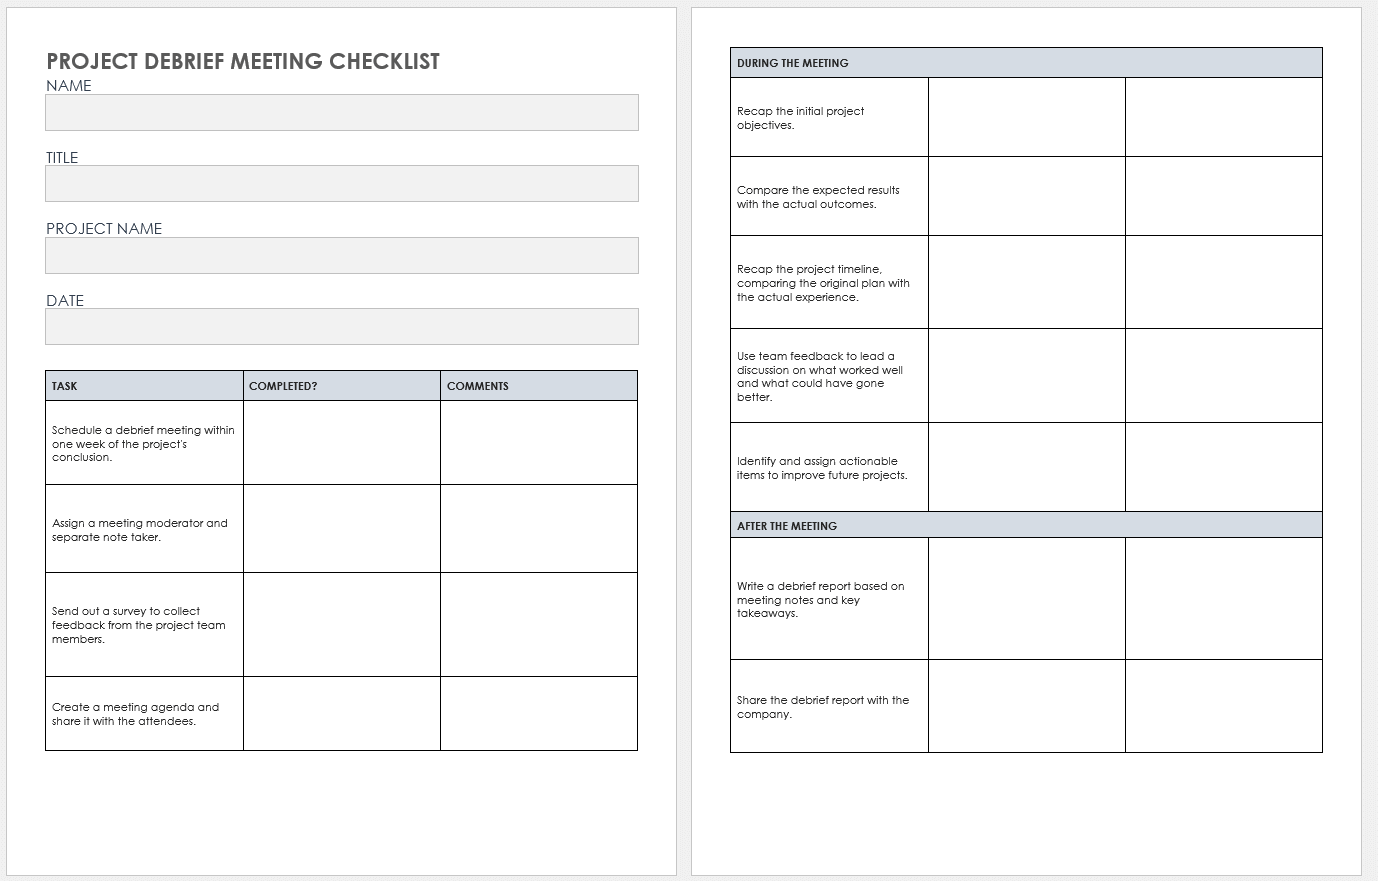 Project Debrief Meeting Checklist